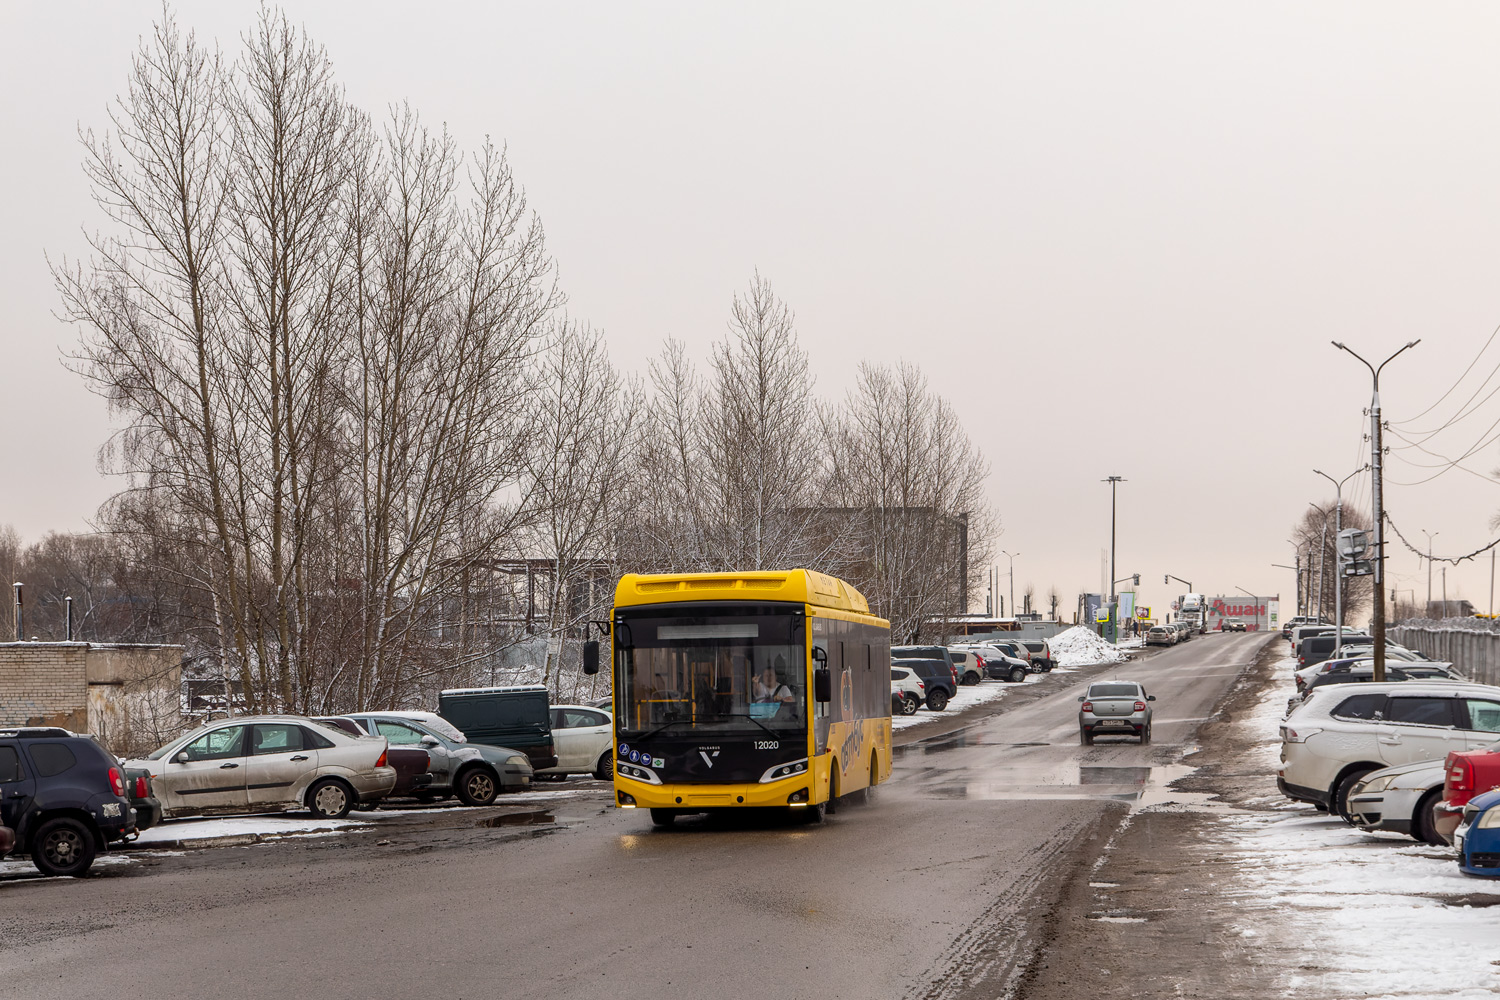 Jaroszlavli terület, Volgabus-4298.G4 (CNG) sz.: 12020; Jaroszlavli terület — New buses